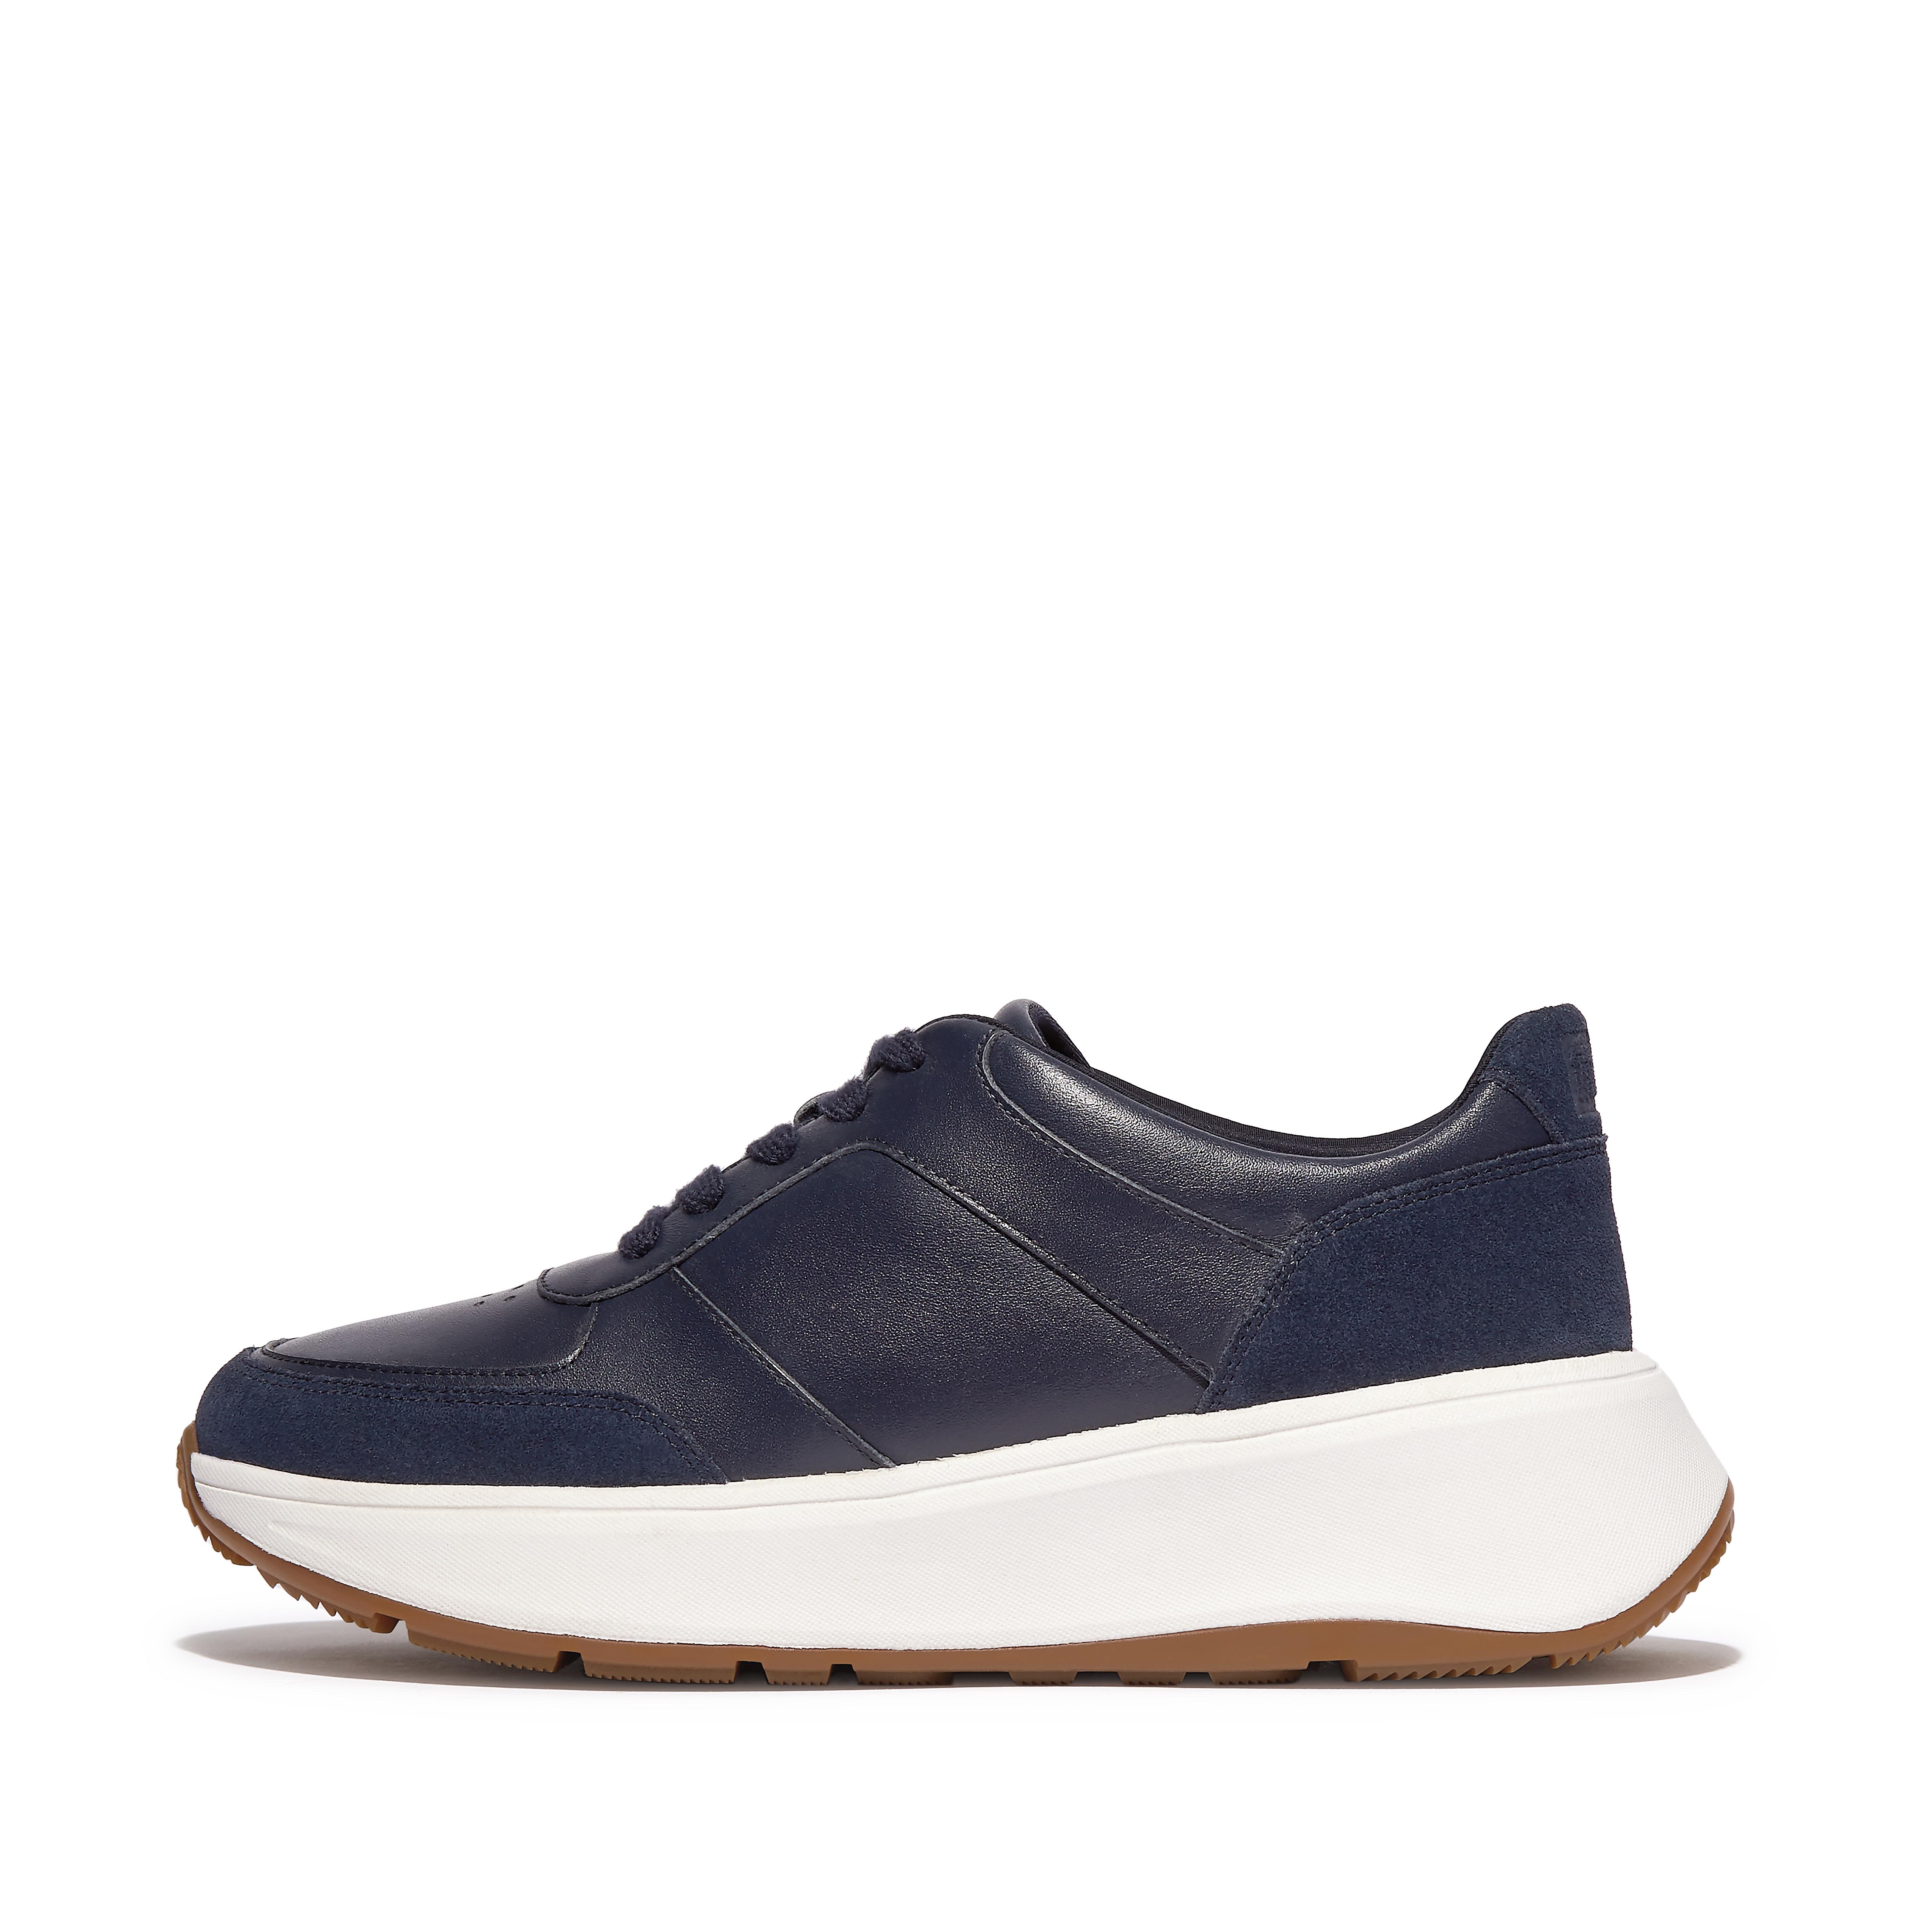 핏플랍 스니커즈 Fitflop Leather/Suede Flatform Sneakers,Midnight Navy